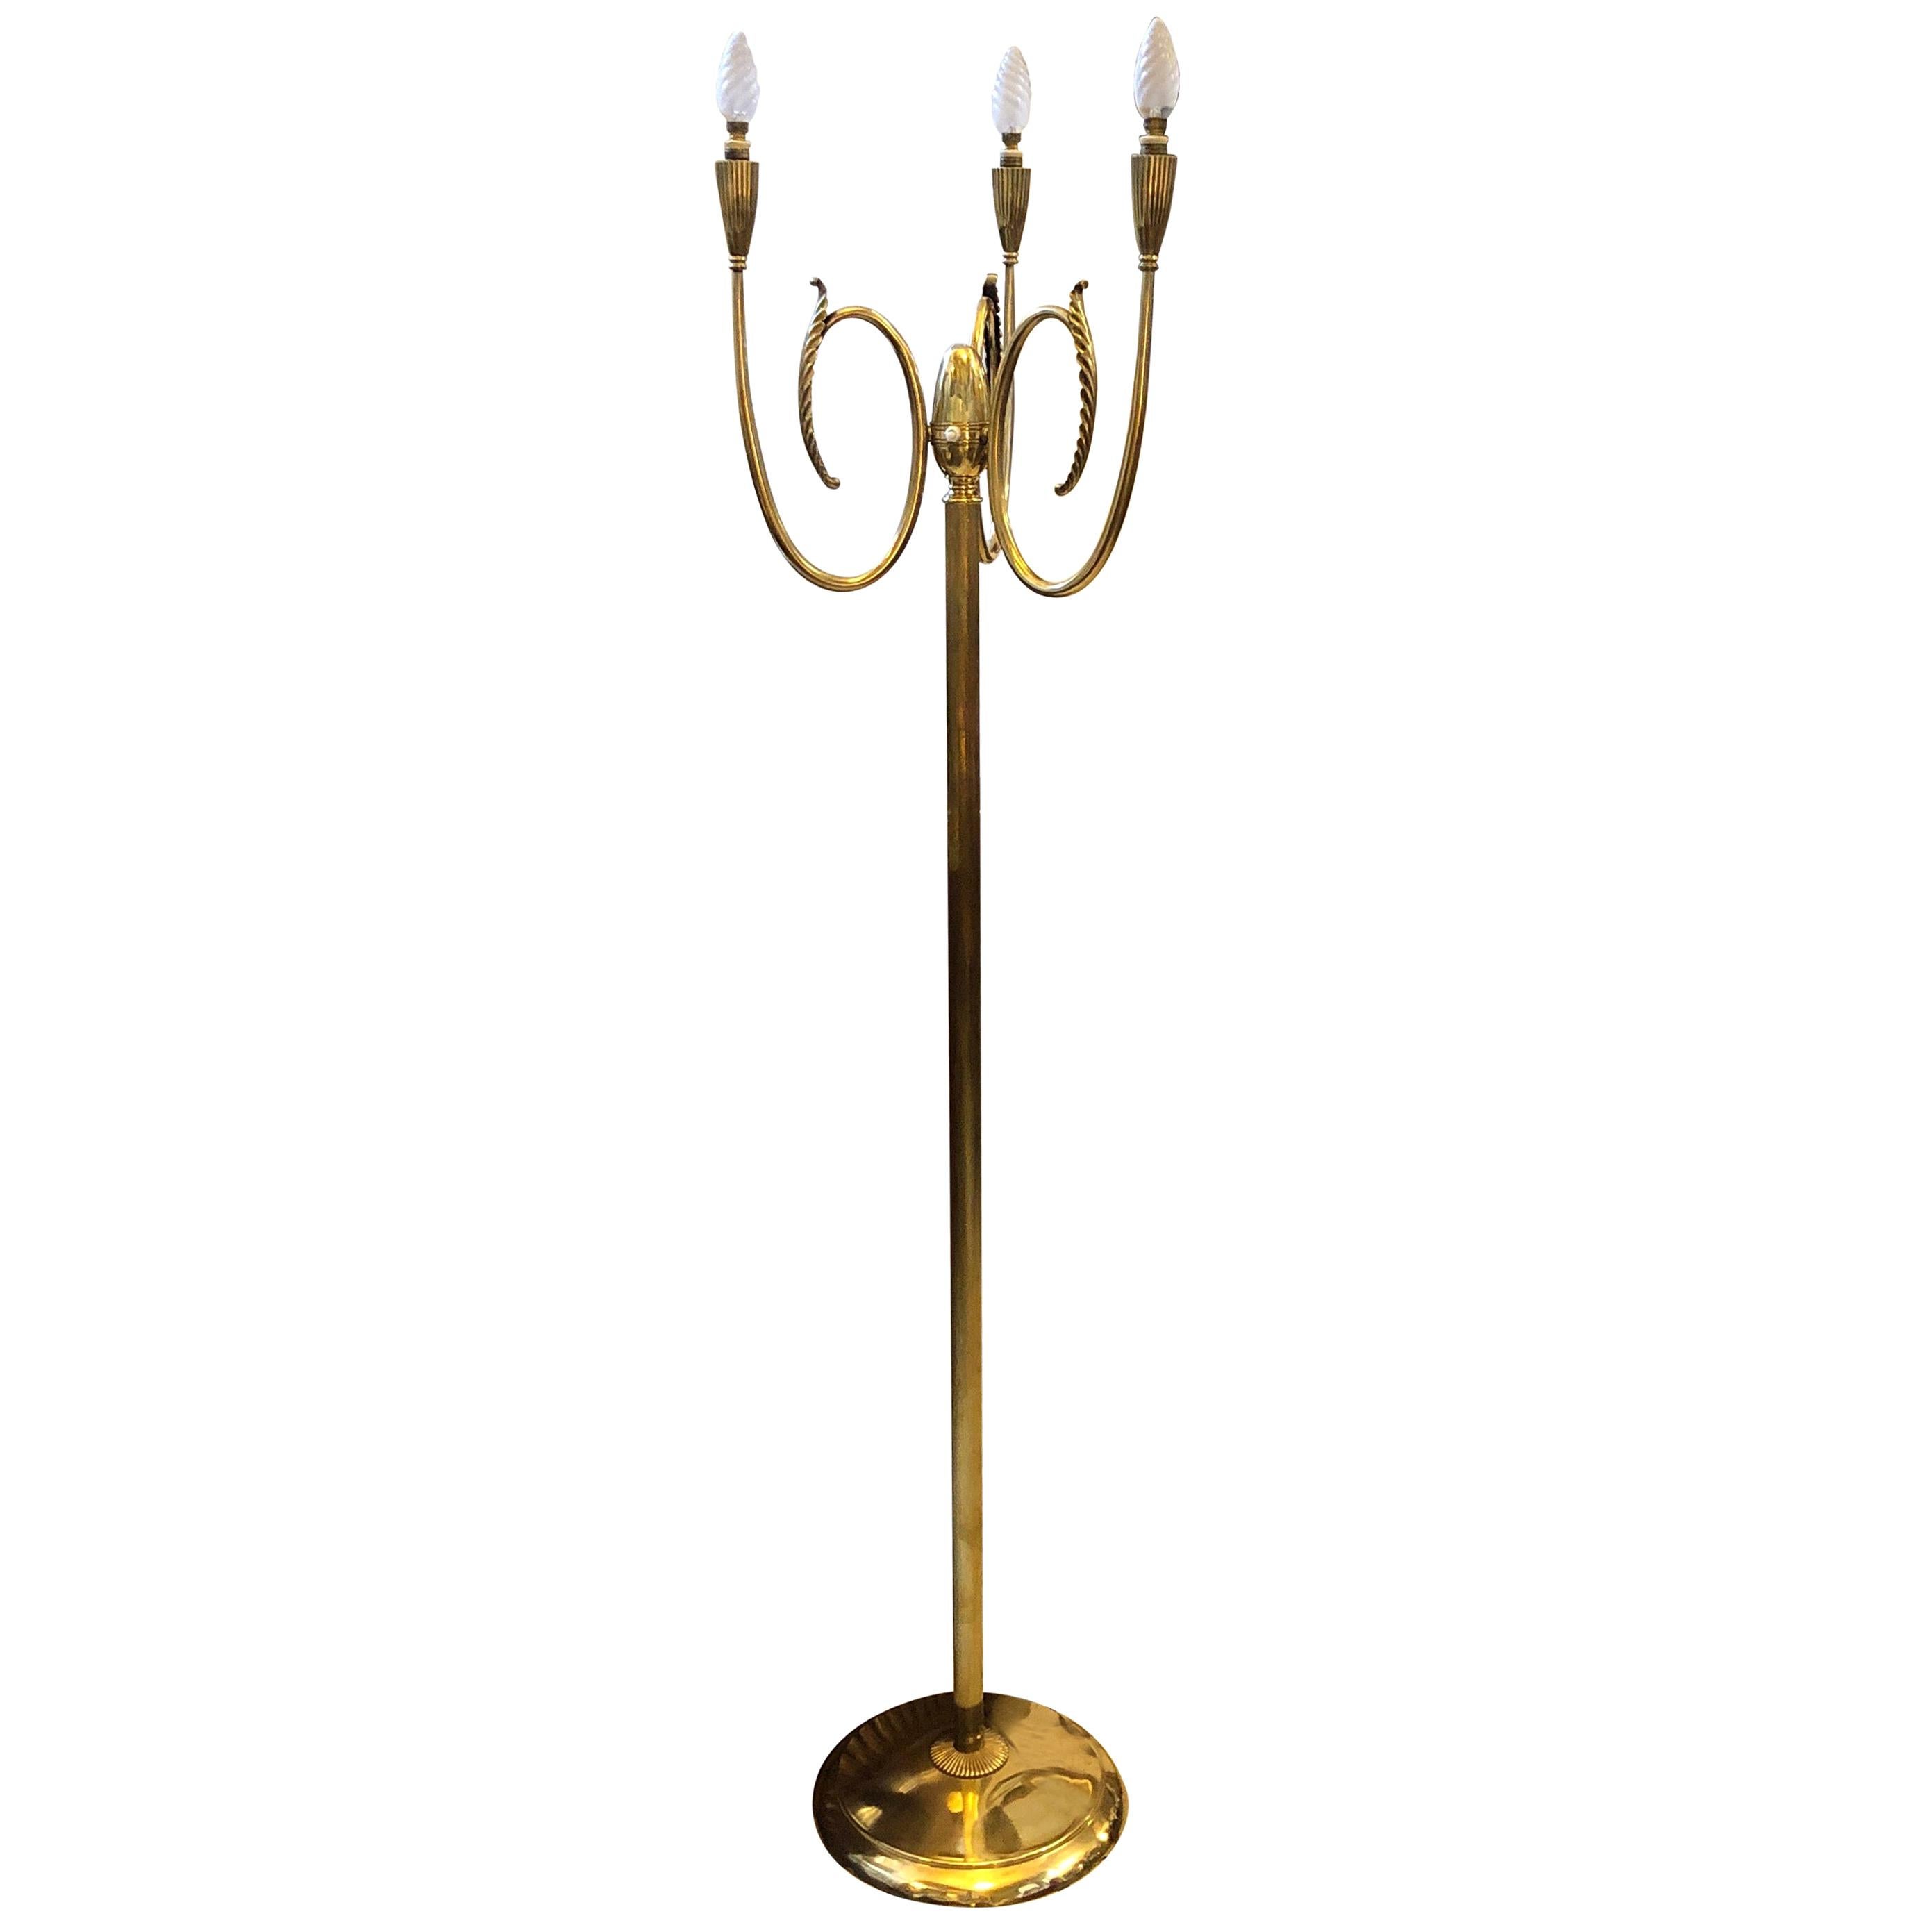 Stylish Mid-Century Modern Brass Italian Floor Lamp, circa 1950